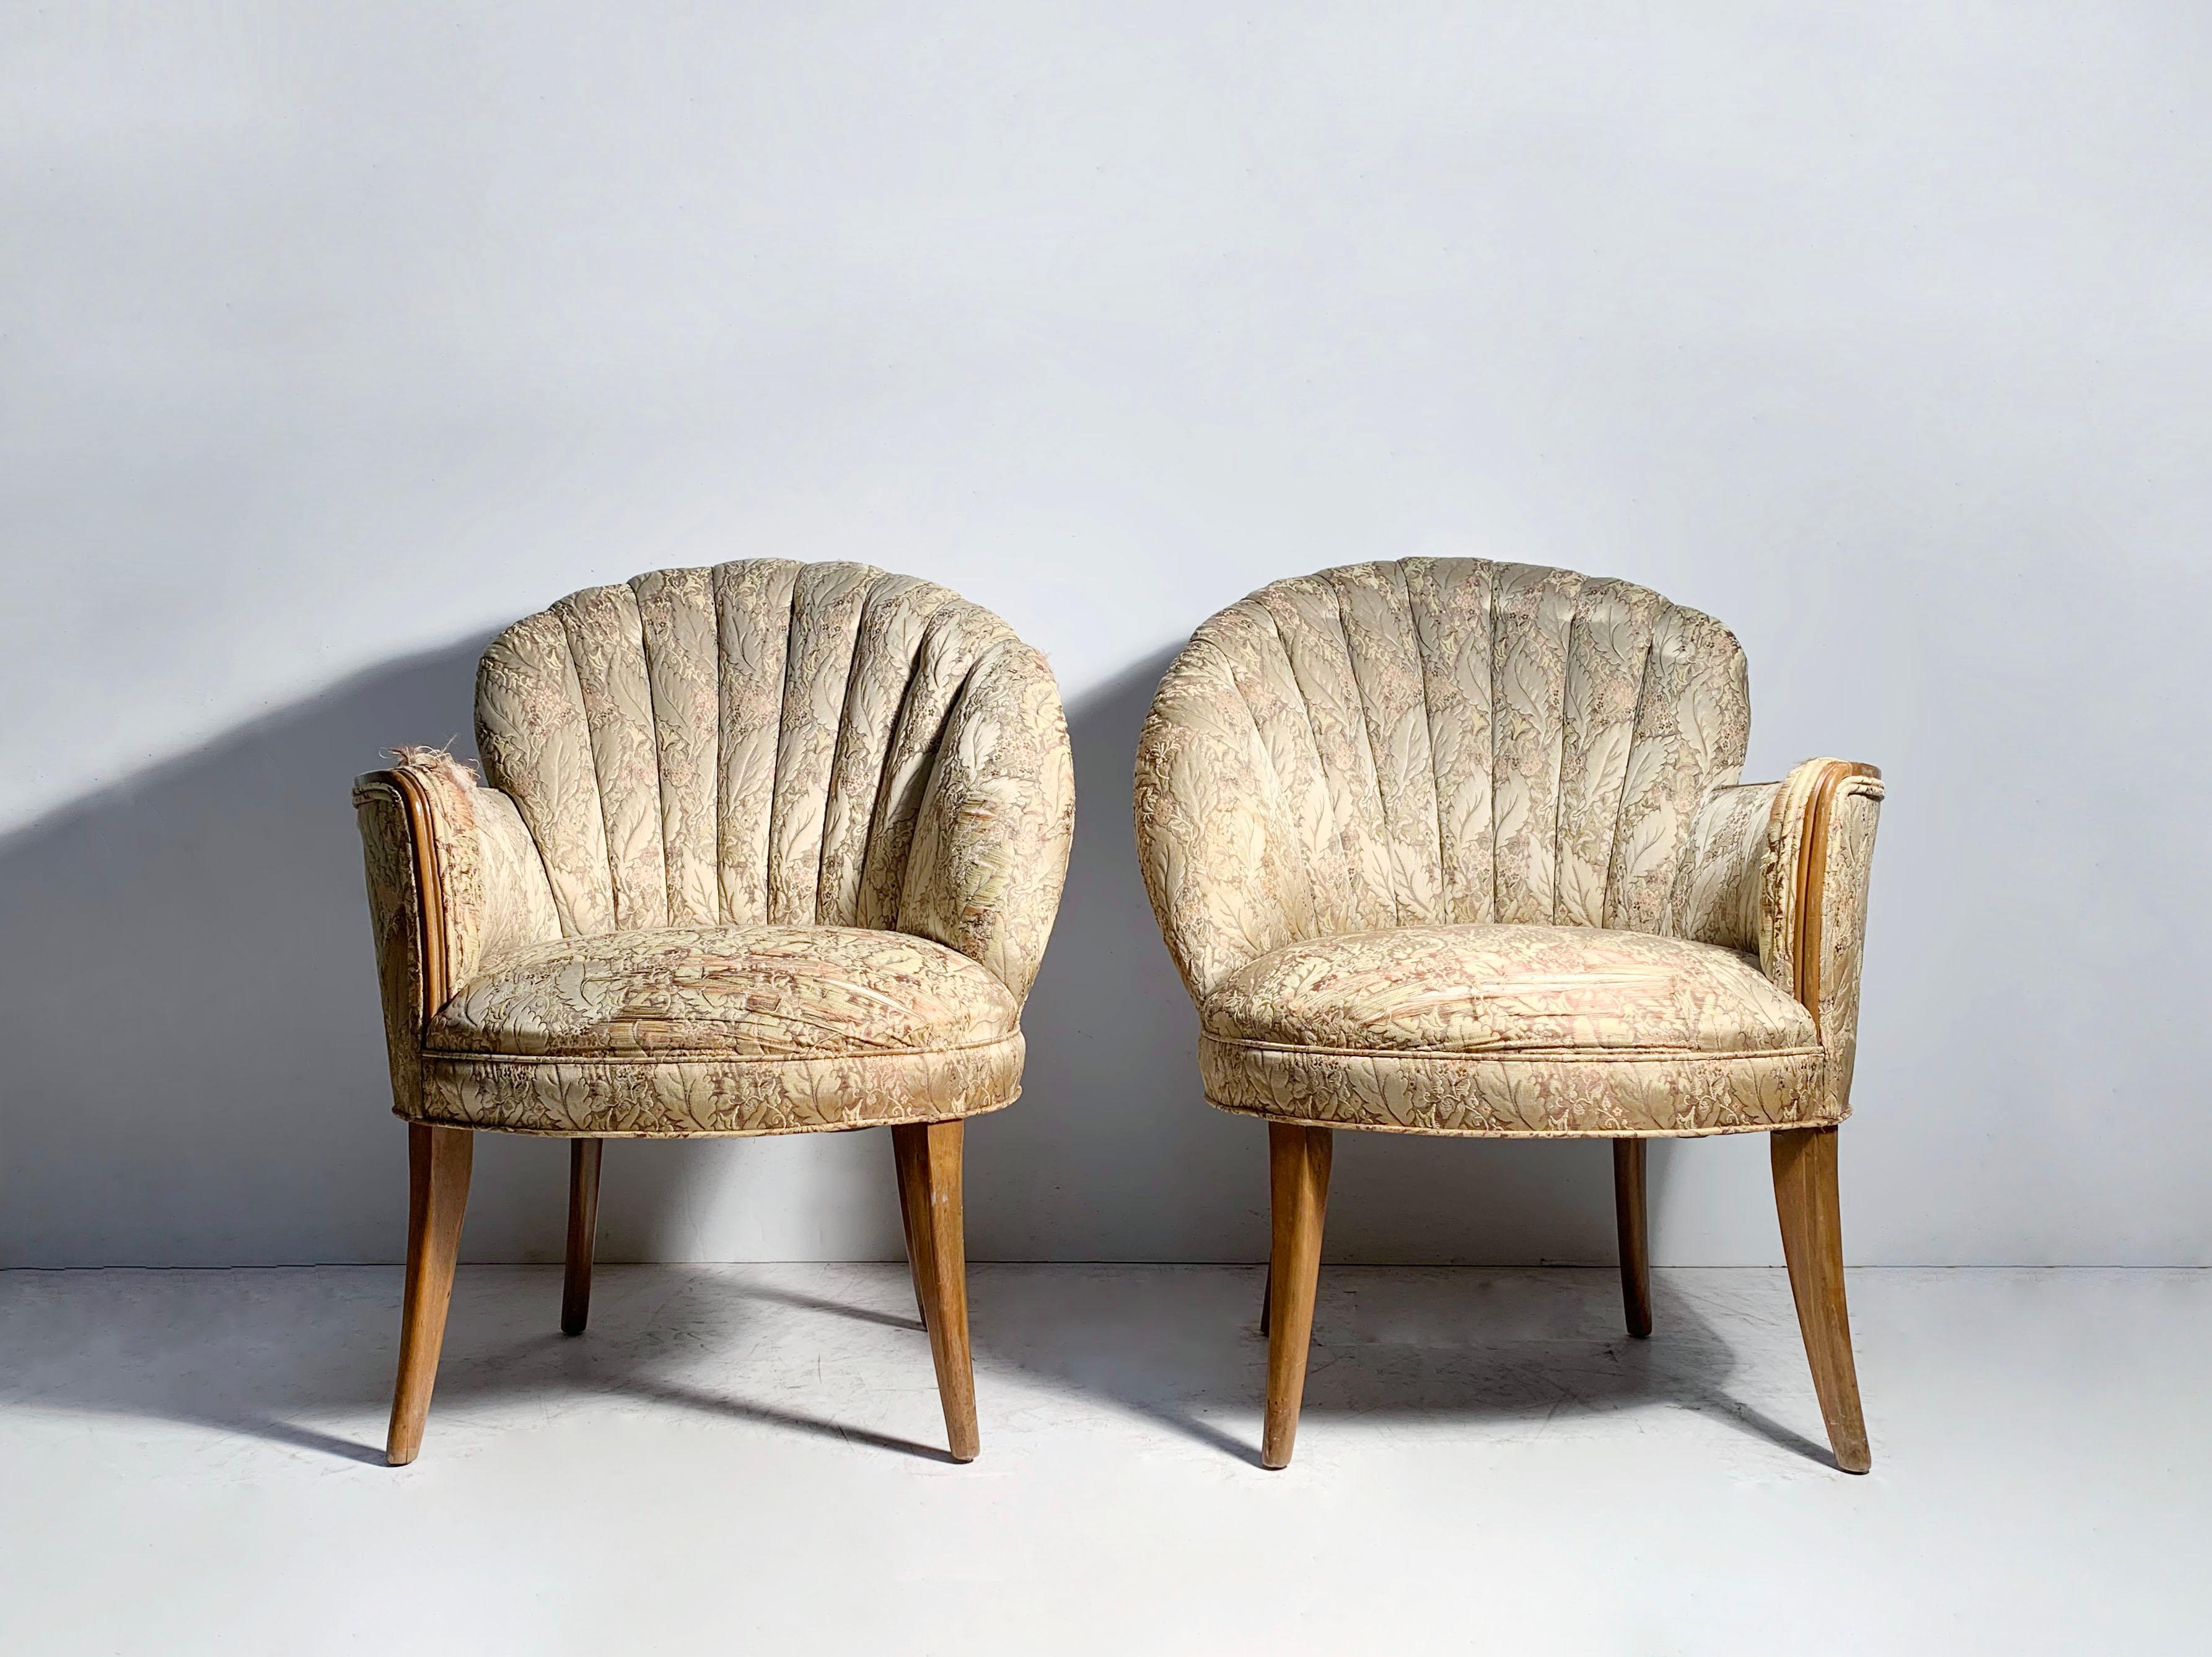 Glamour Pair of Vintage Asymmetrical Fan zurück Stühle.

Stil von Dorothy Draper / Gilbert Rohde

Bereit zur Neupolsterung.